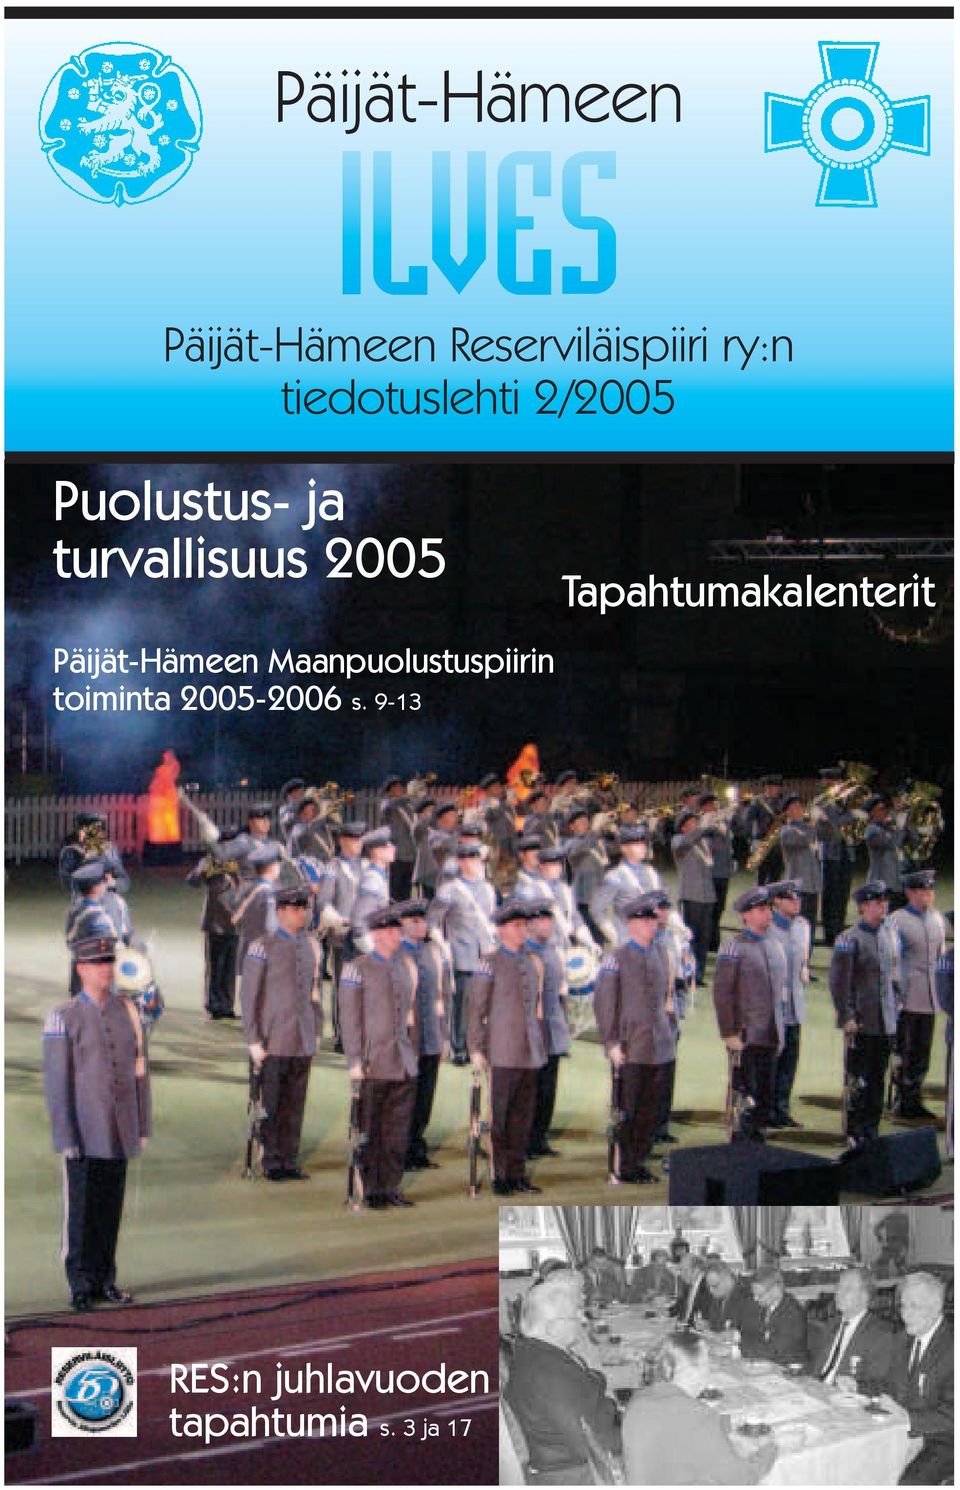 2005 Maanpuolustuspiirin toiminta 2005-2006 s.